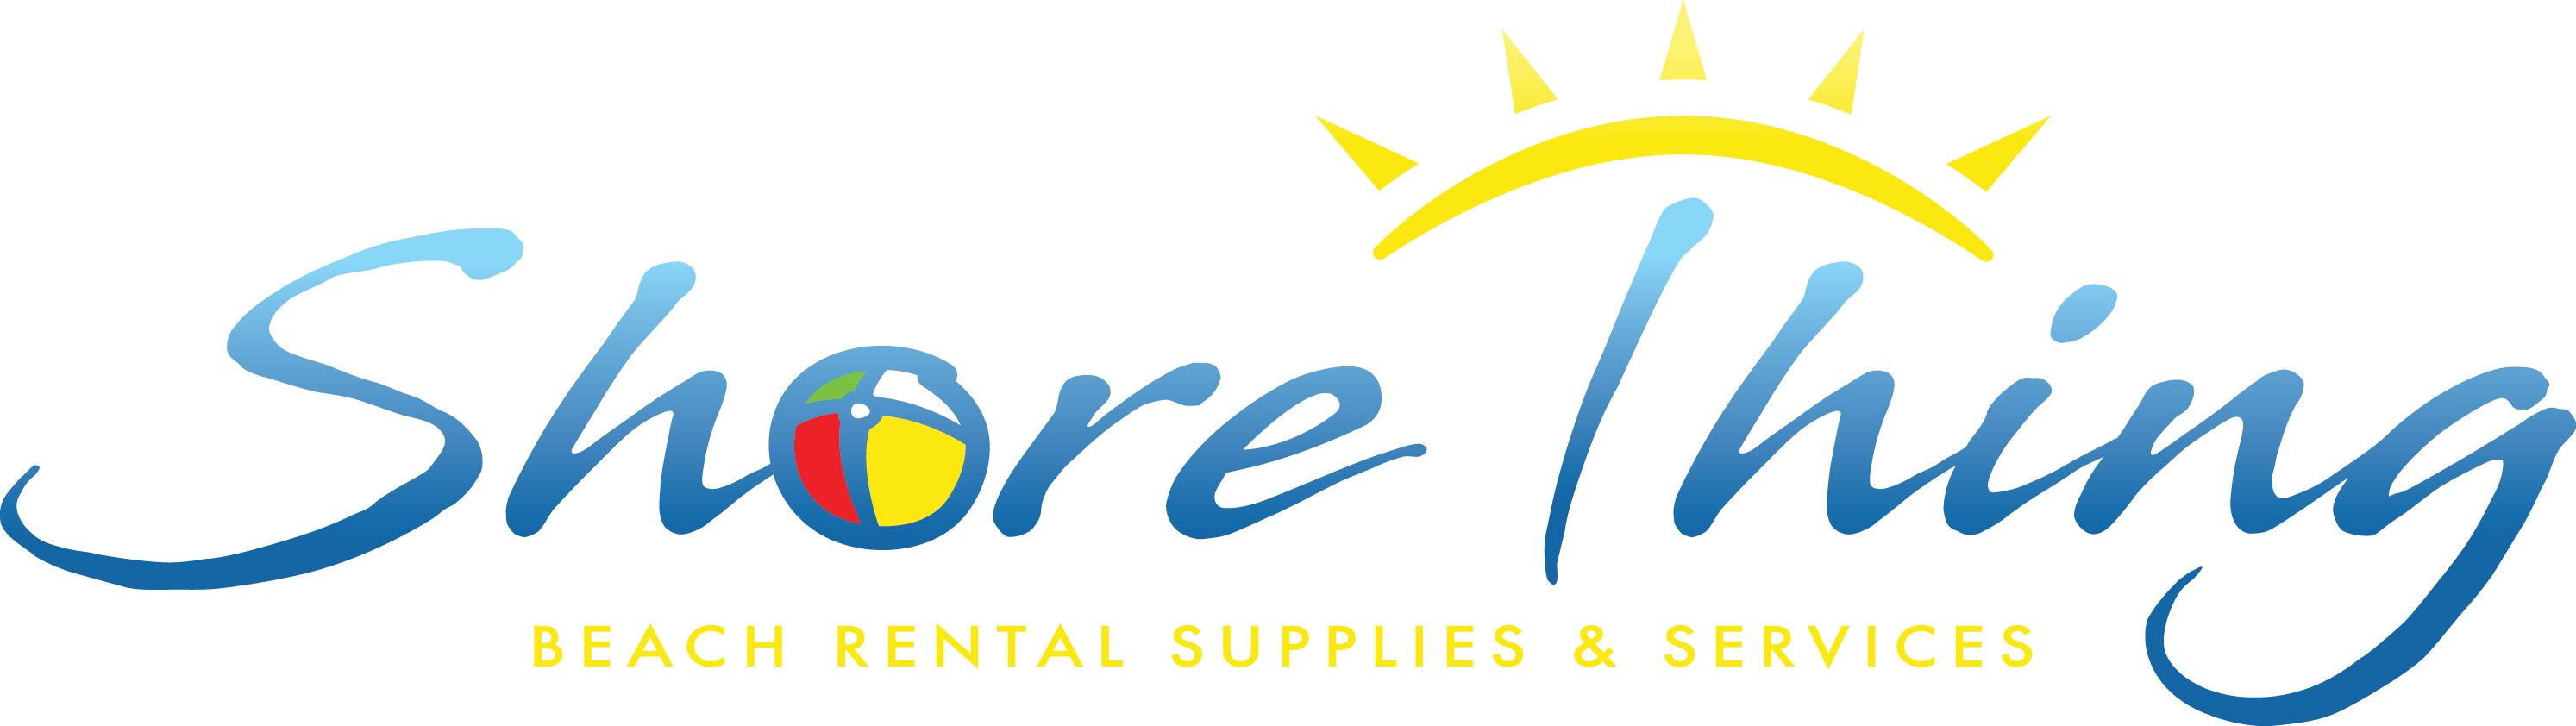 Shore Thing Beach Rentals & Supplies, NW FL